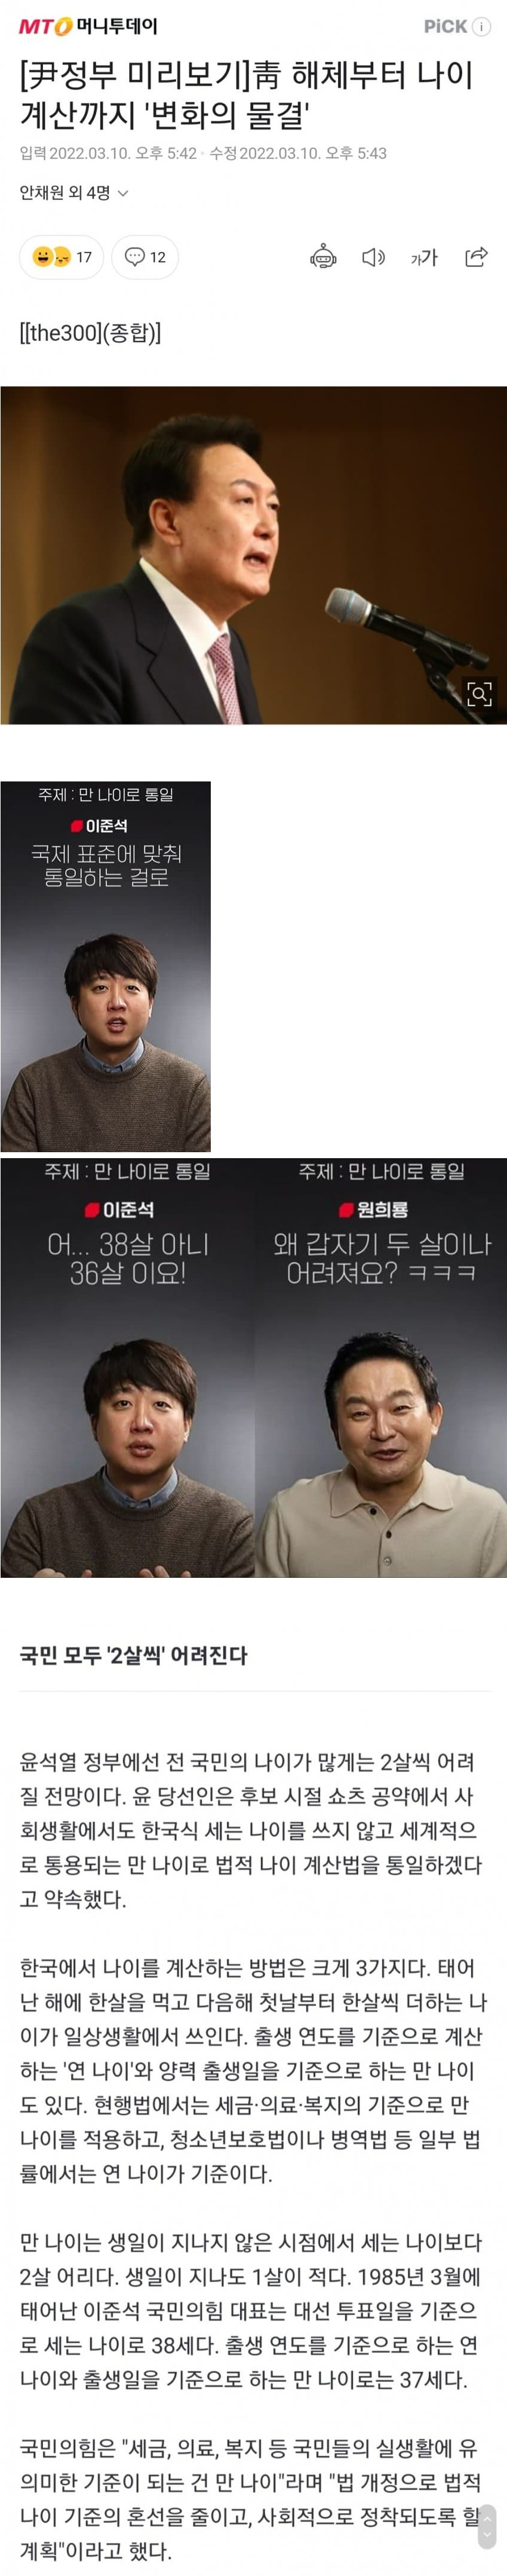 한국식 나이 폐지